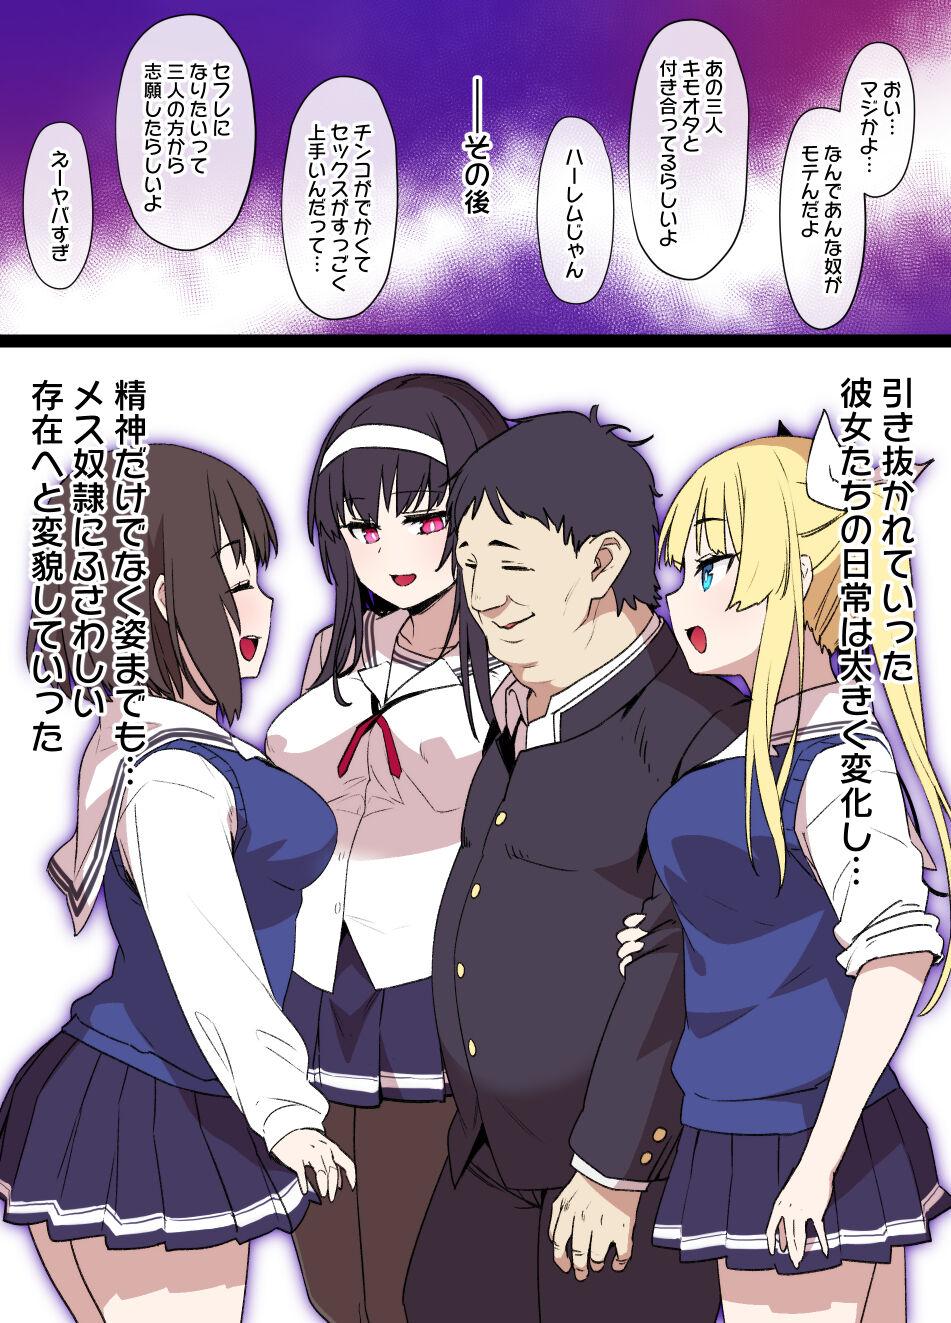 Gang [Kusayarou] Saekano NTR Manga 16P - Saimin Sennou & Bitch-ka (Saenai Heroine no Sodatekata) - Saenai heroine no sodatekata Orgia - Page 10